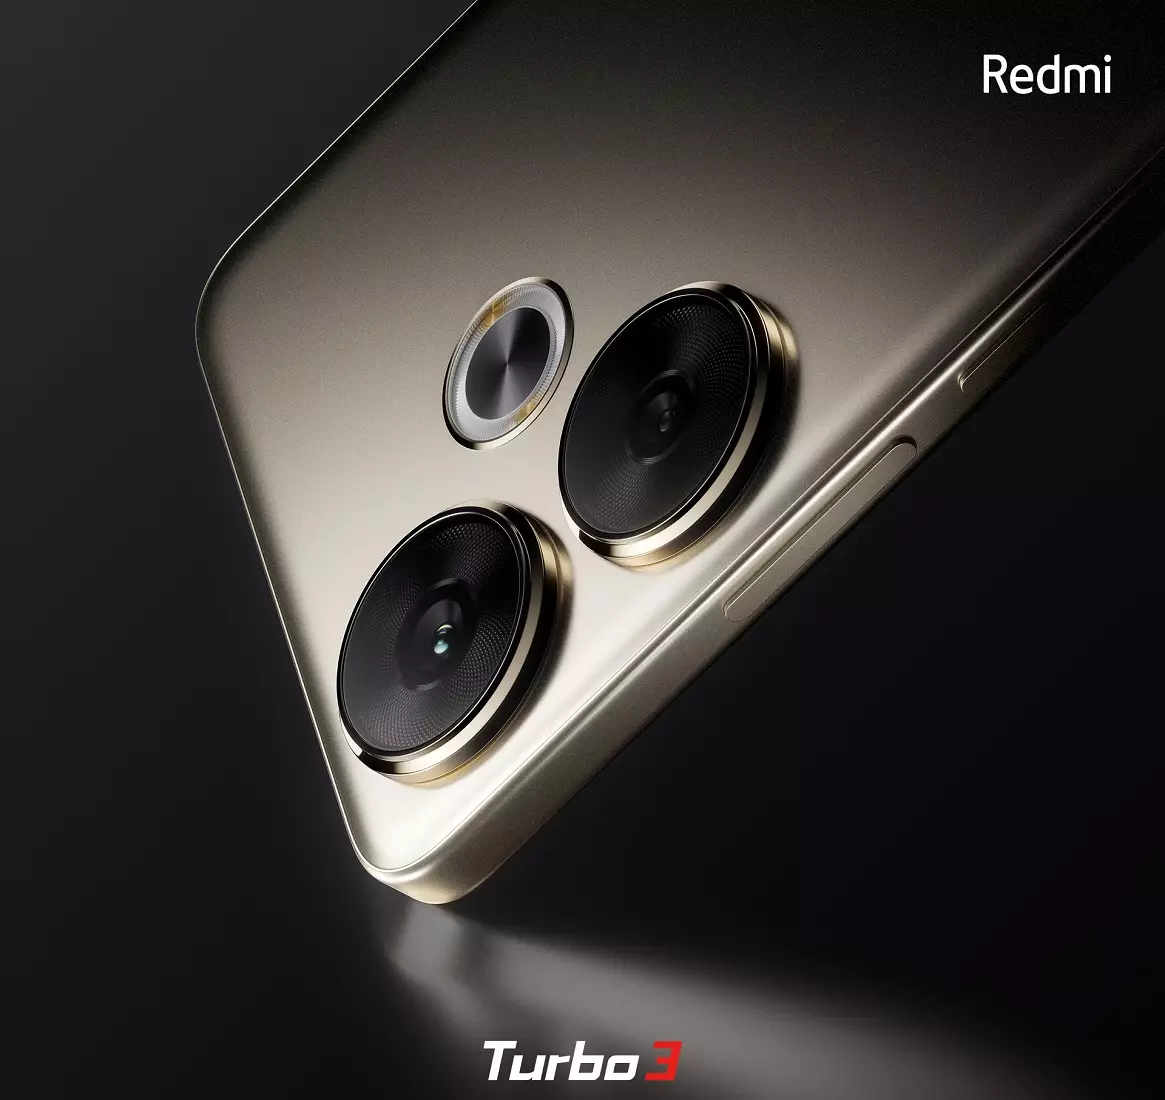 Redmi Turbo 3 design cn.